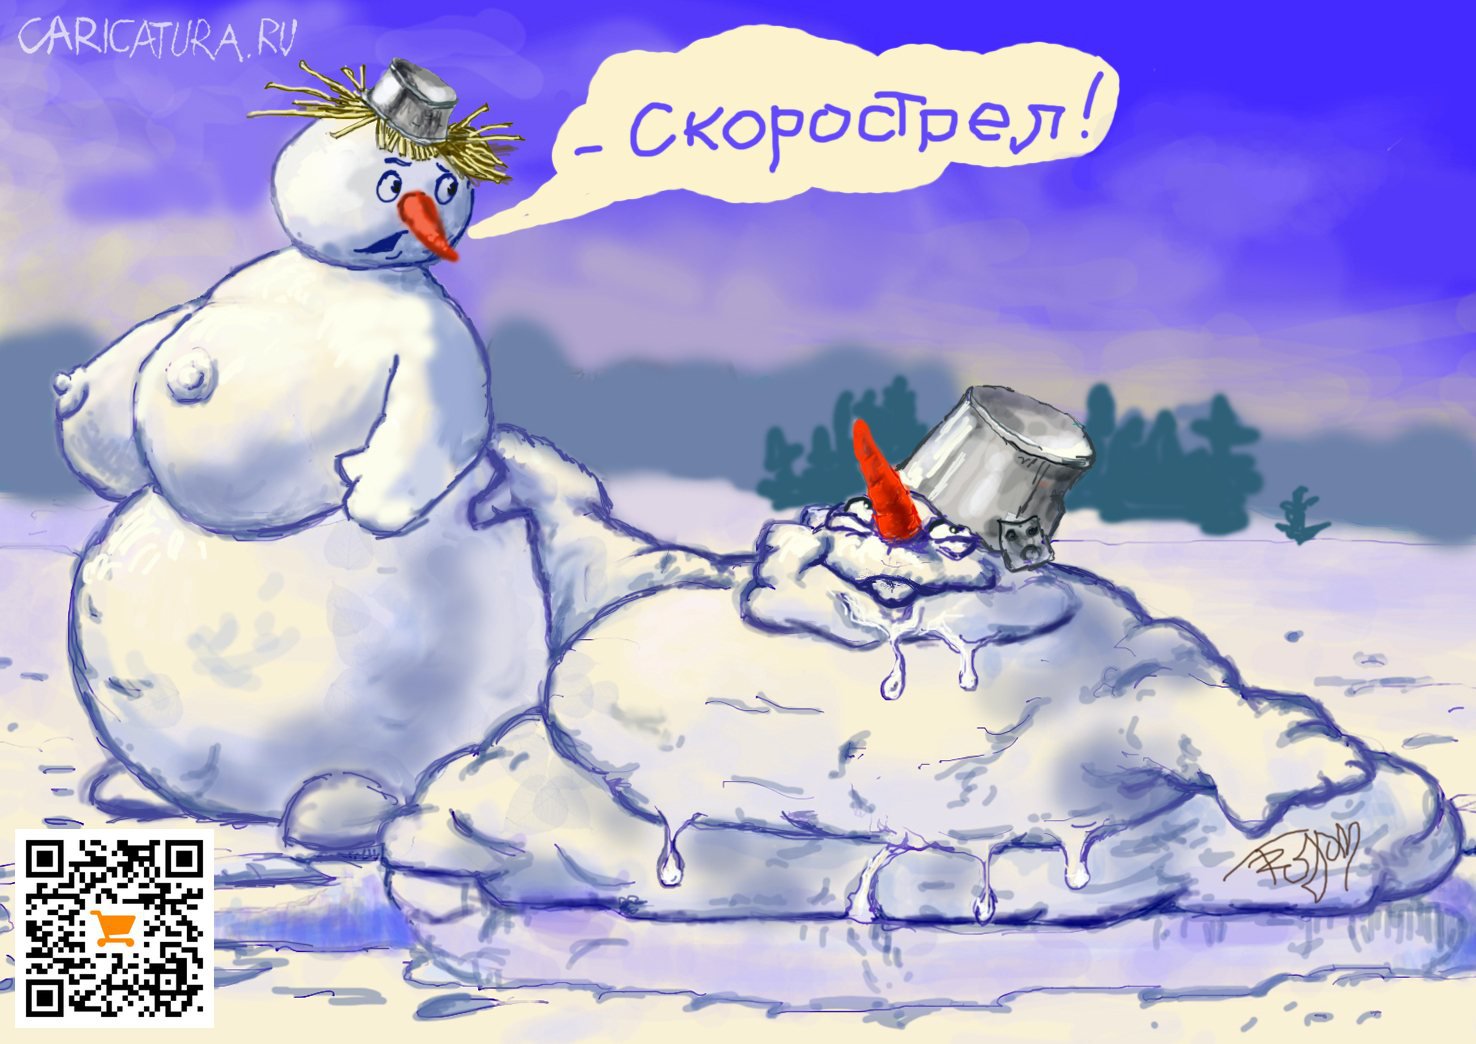 Карикатура "Снеговики тоже хотят...", Алек Геворгян